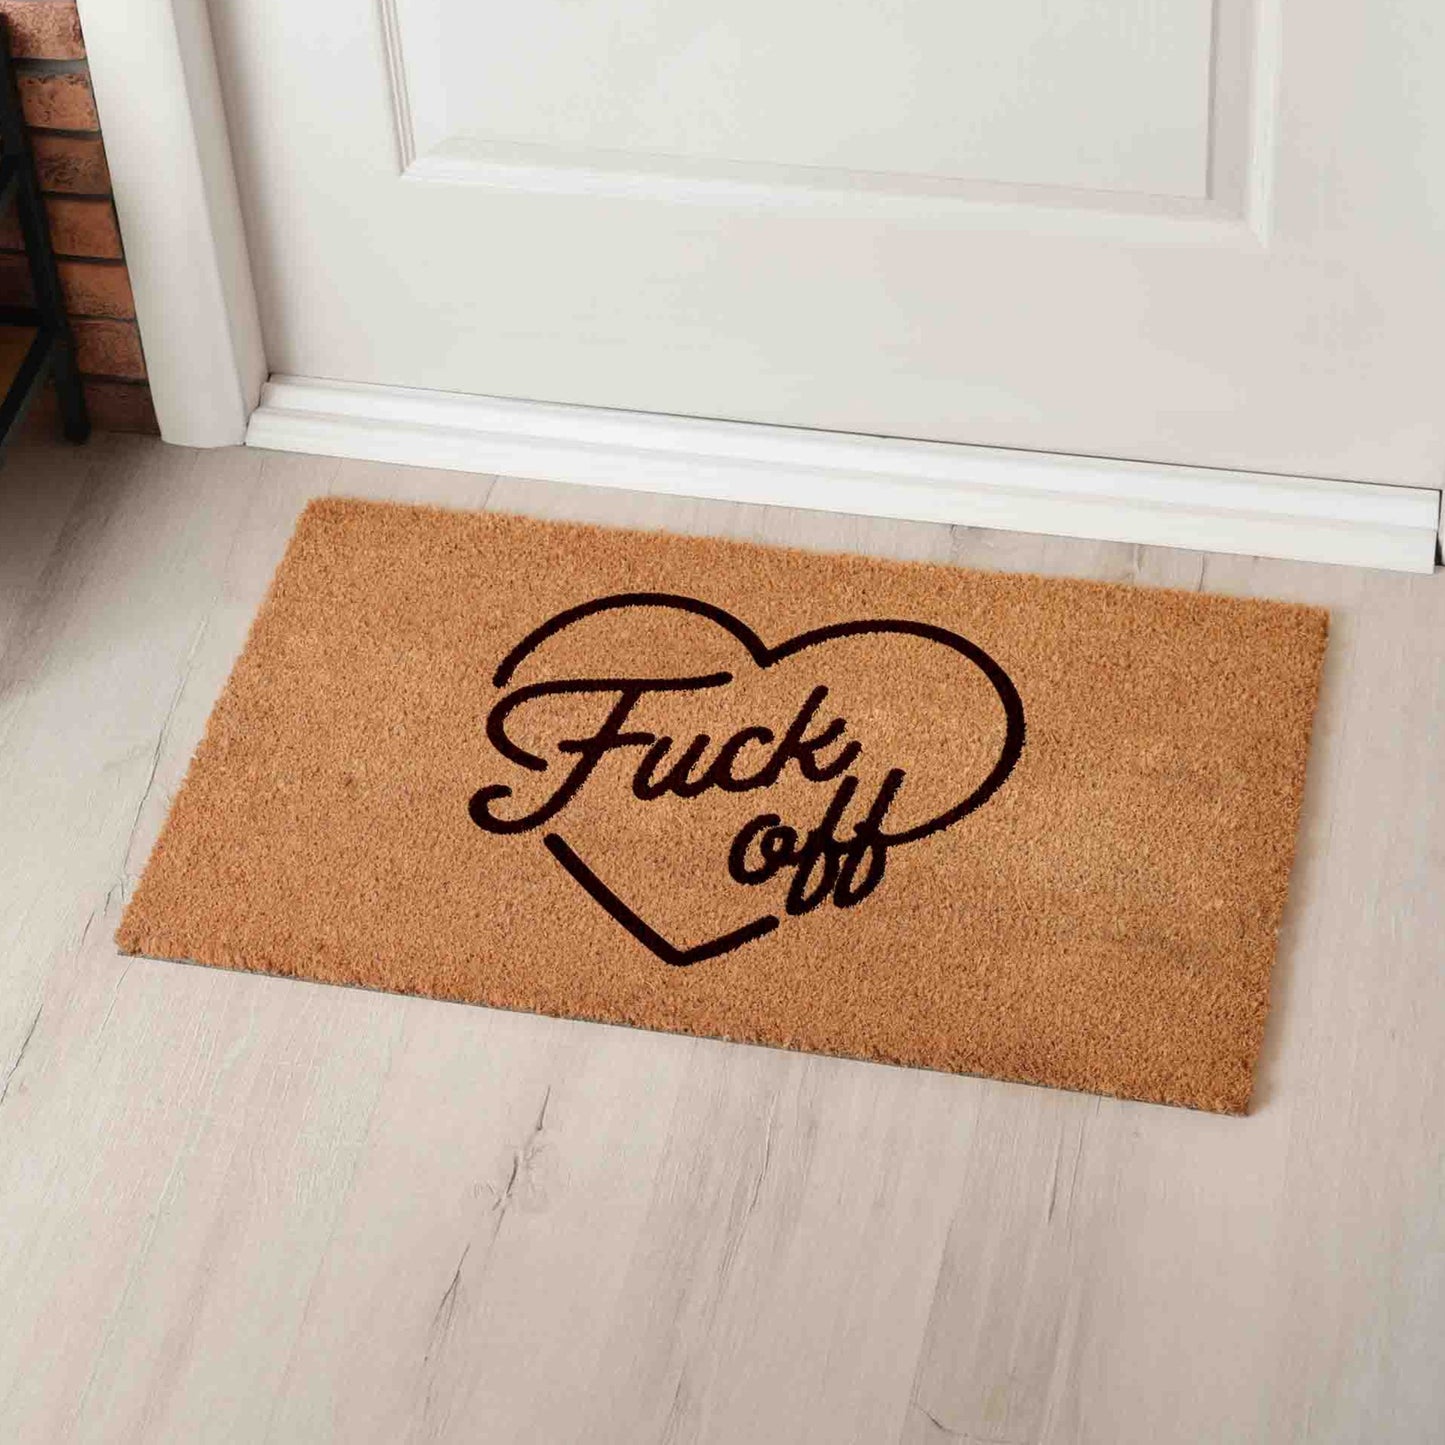 Fuck Off Eco-Friendly Doormat - Durable & Humorous